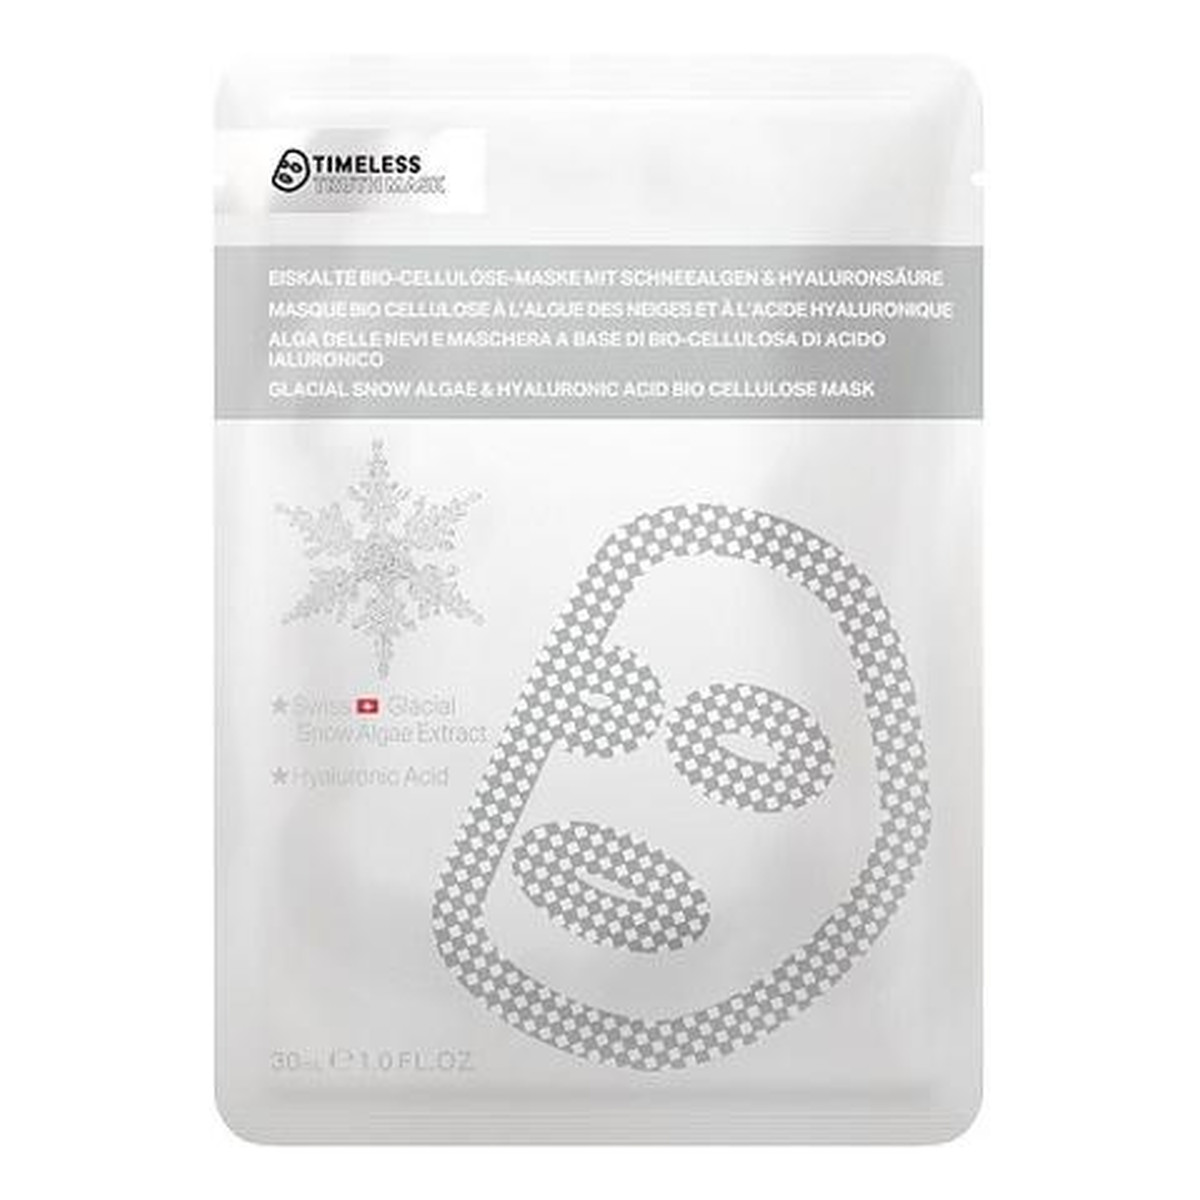 Timeless Truth Mask Glacial Snow Algae & Hyaluronic Acid maseczka w płachcie z biocelulozy 30ml